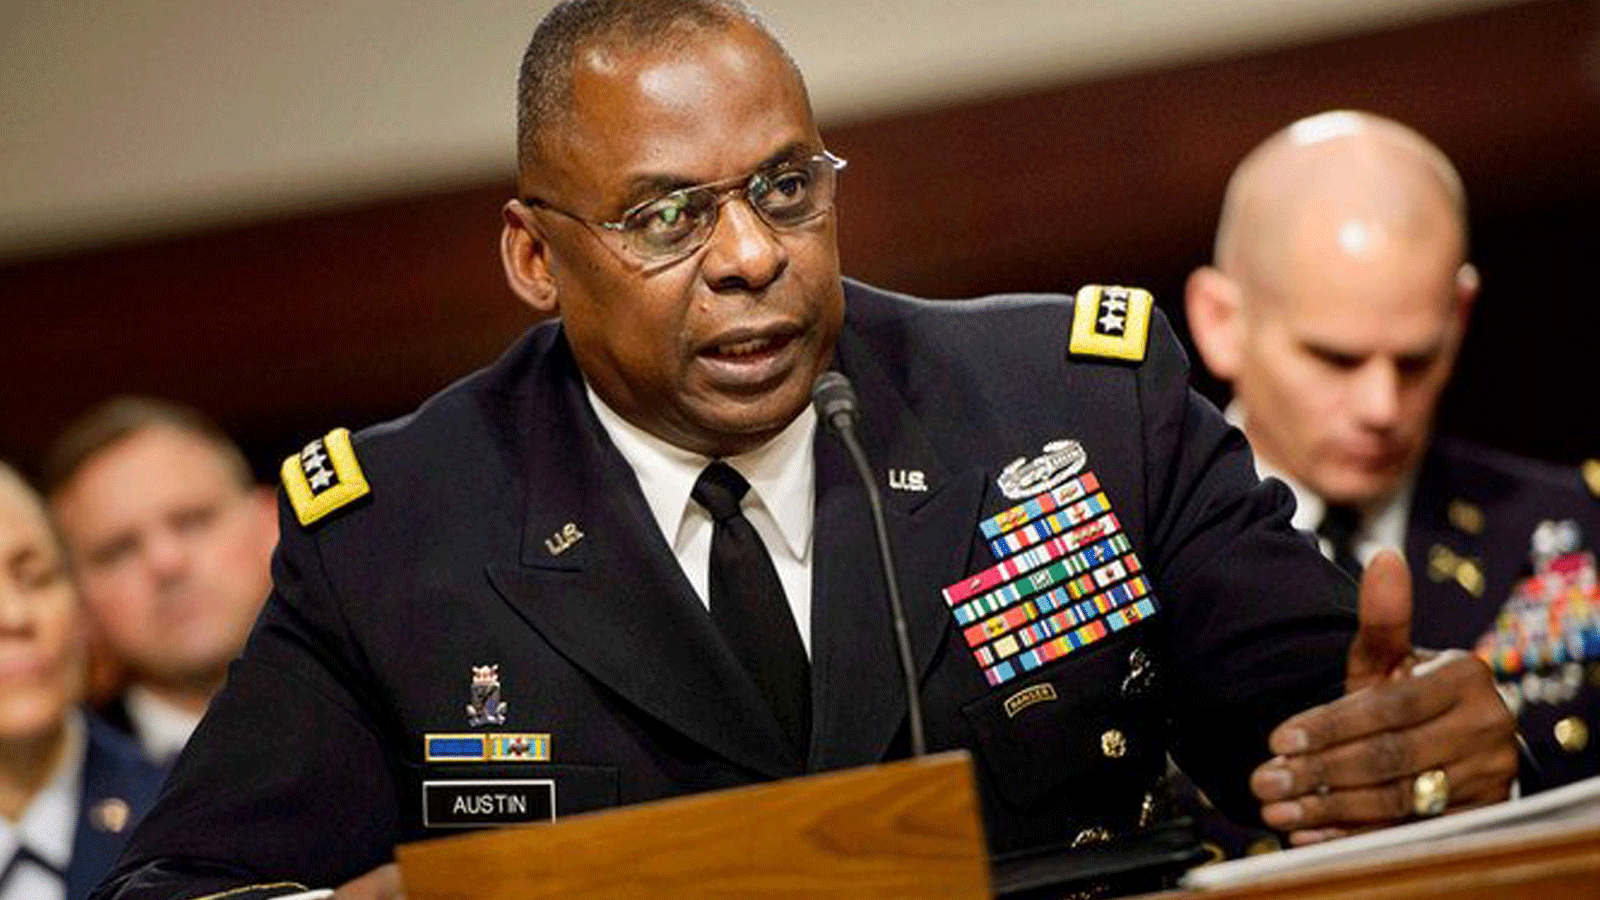  صورة التُقطت في 8 آذار/مارس 2016 للجنرال لويد أوستن، قائد القيادة المركزية الأميركية، خلال جلسة استماع للجنة القوات المسلحة بمجلس الشيوخ في واشنطن العاصمة.